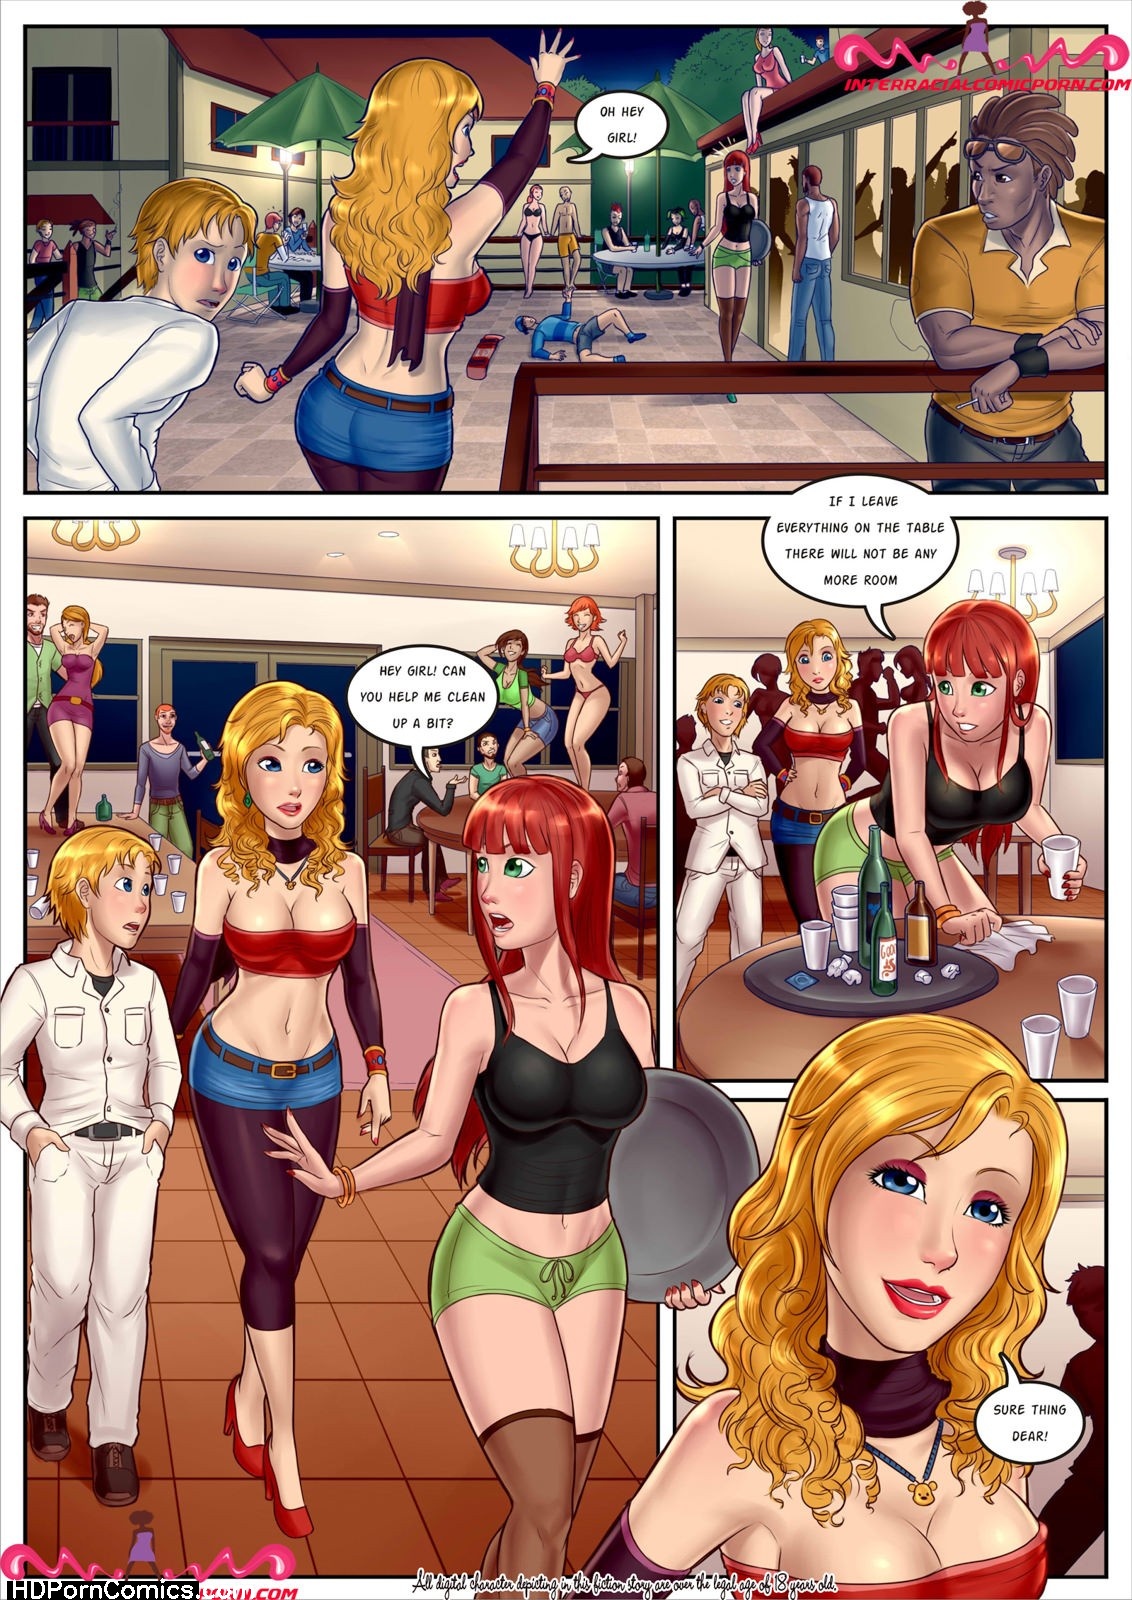 Party Slut - Issue 1 Cartoon Porn Comic - HD Porn Comix